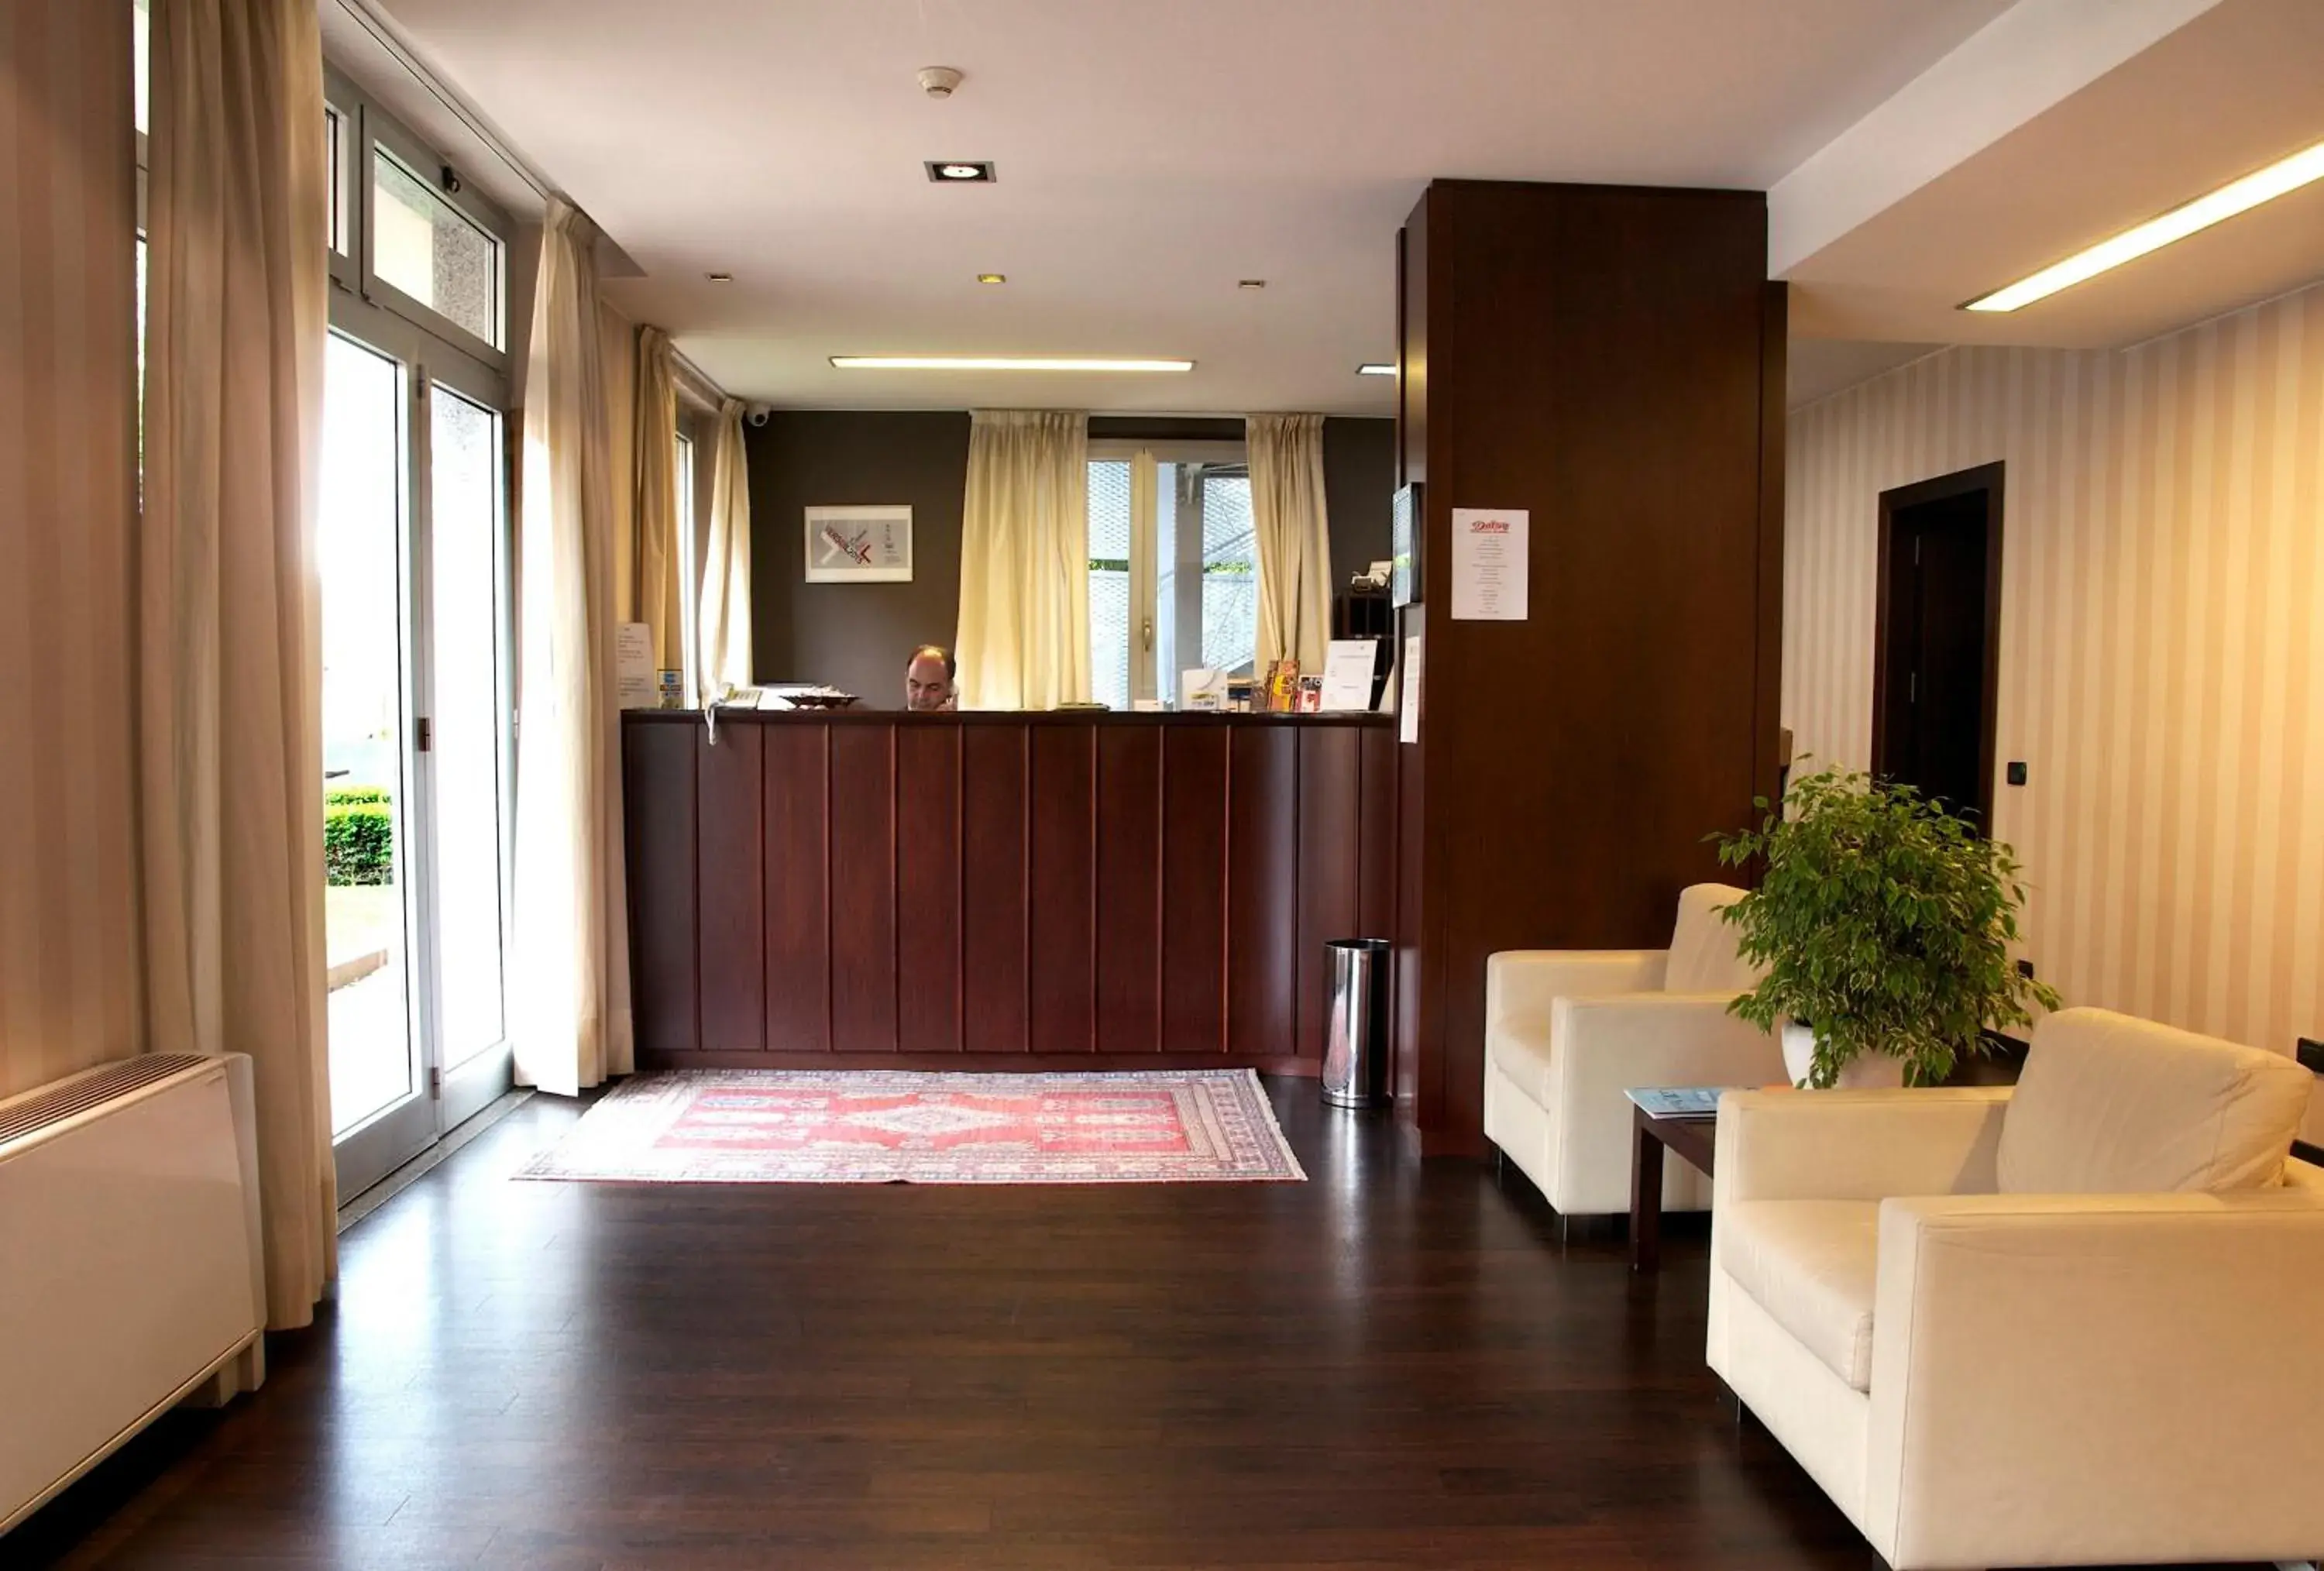 Lobby or reception, Lobby/Reception in Hotel 2C